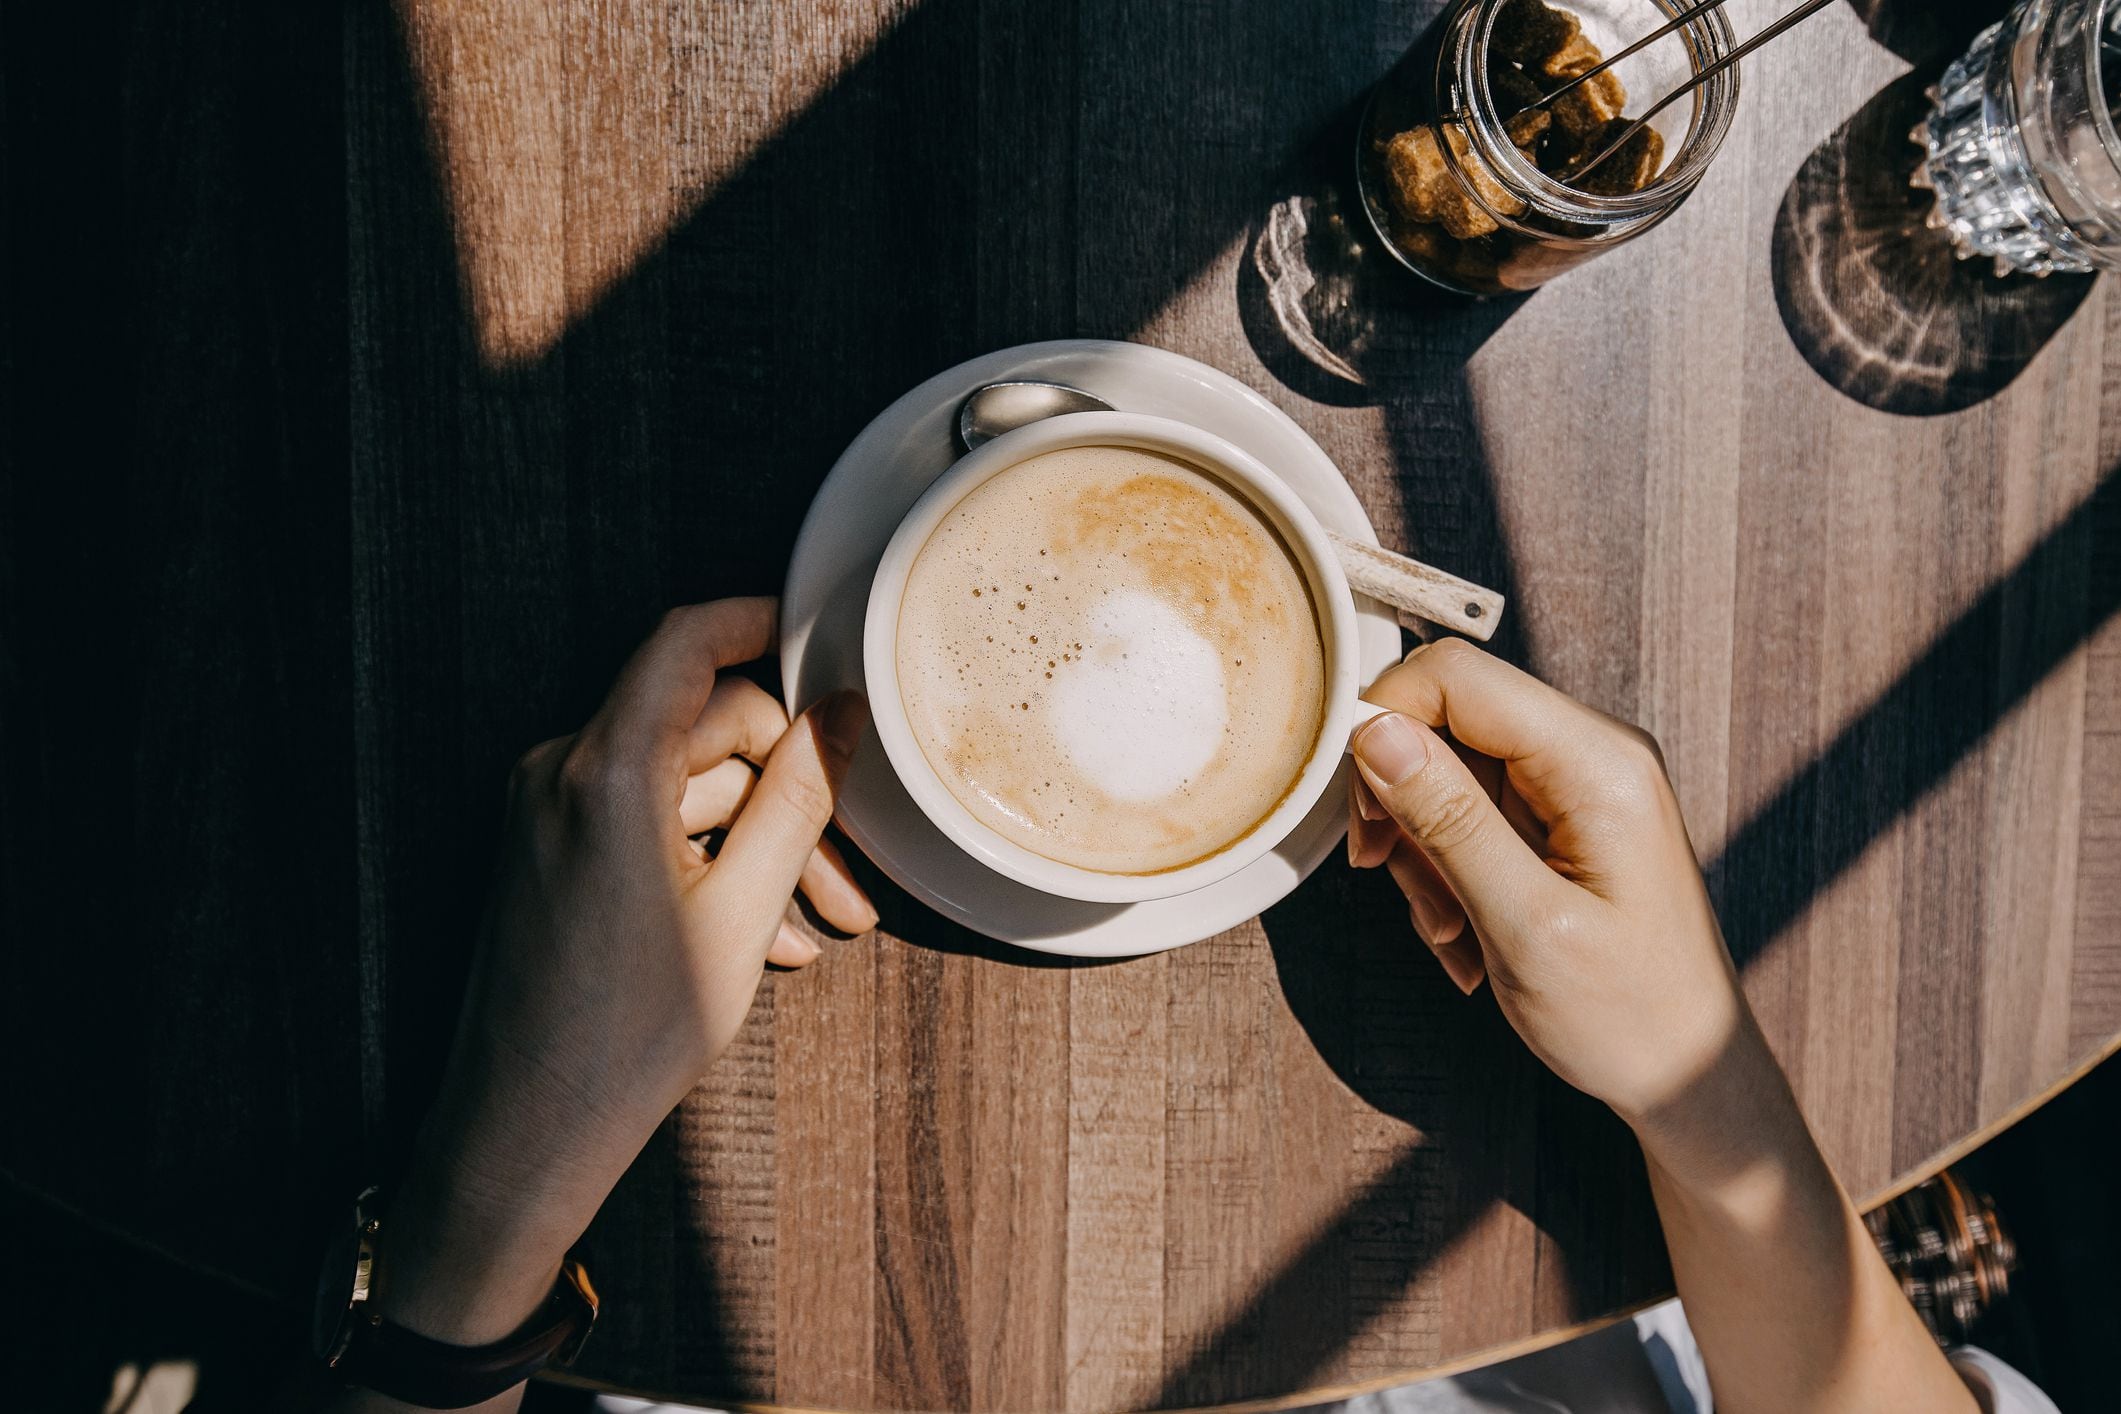 “Mientras que algunas personas pueden tomar fácilmente de cuatro a cinco tazas al día, otras pueden tener tolerancias más bajas a la cafeína y ser más susceptibles a los efectos secundarios”, aclaró uno de los expertos